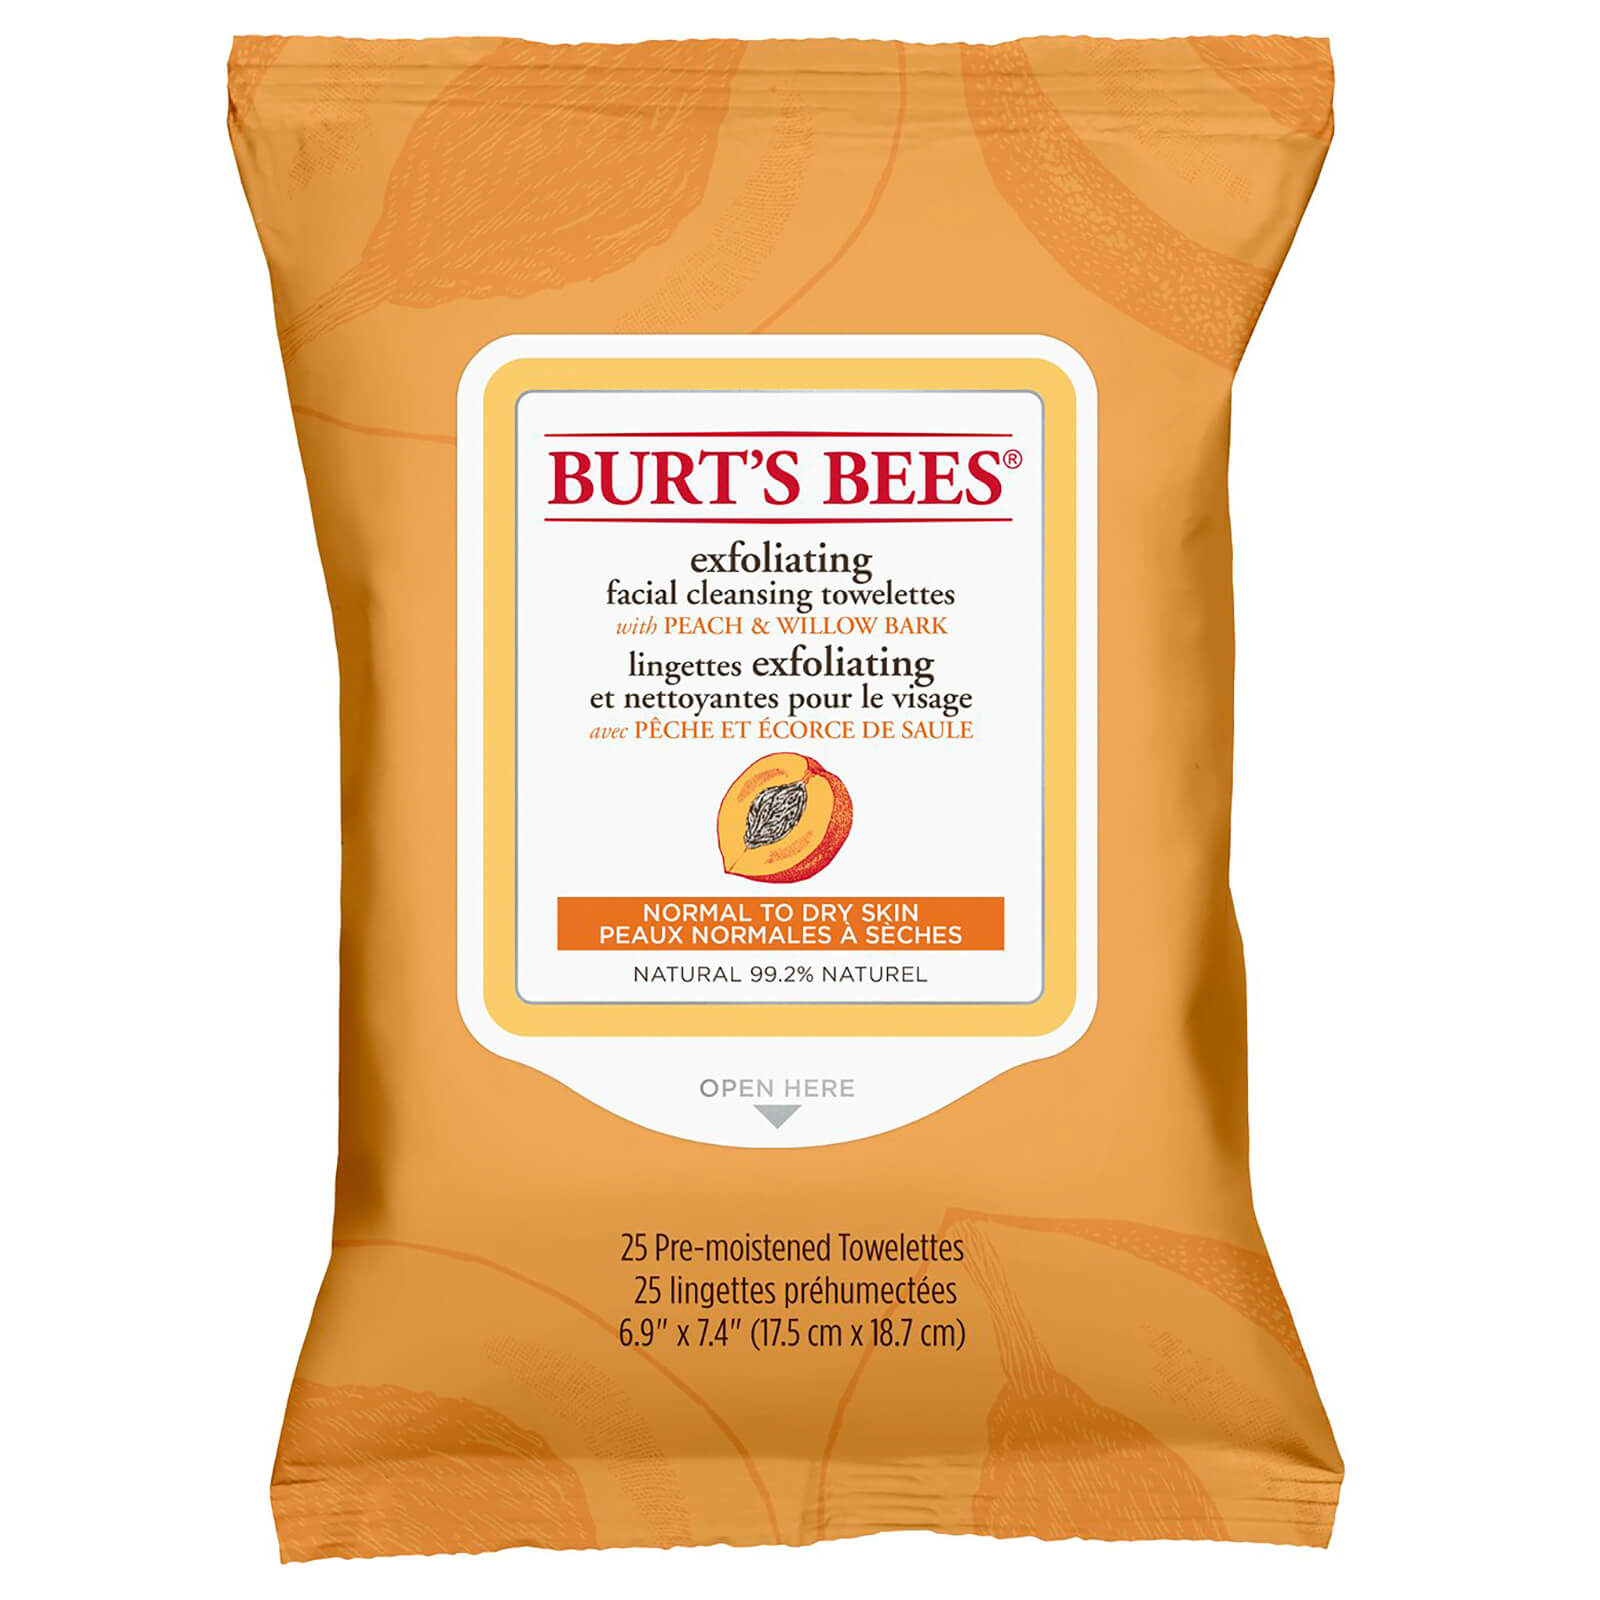 Toallitas limpiadoras faciales de Burt's Bees - Peach and Willow Bark (30 unidades)